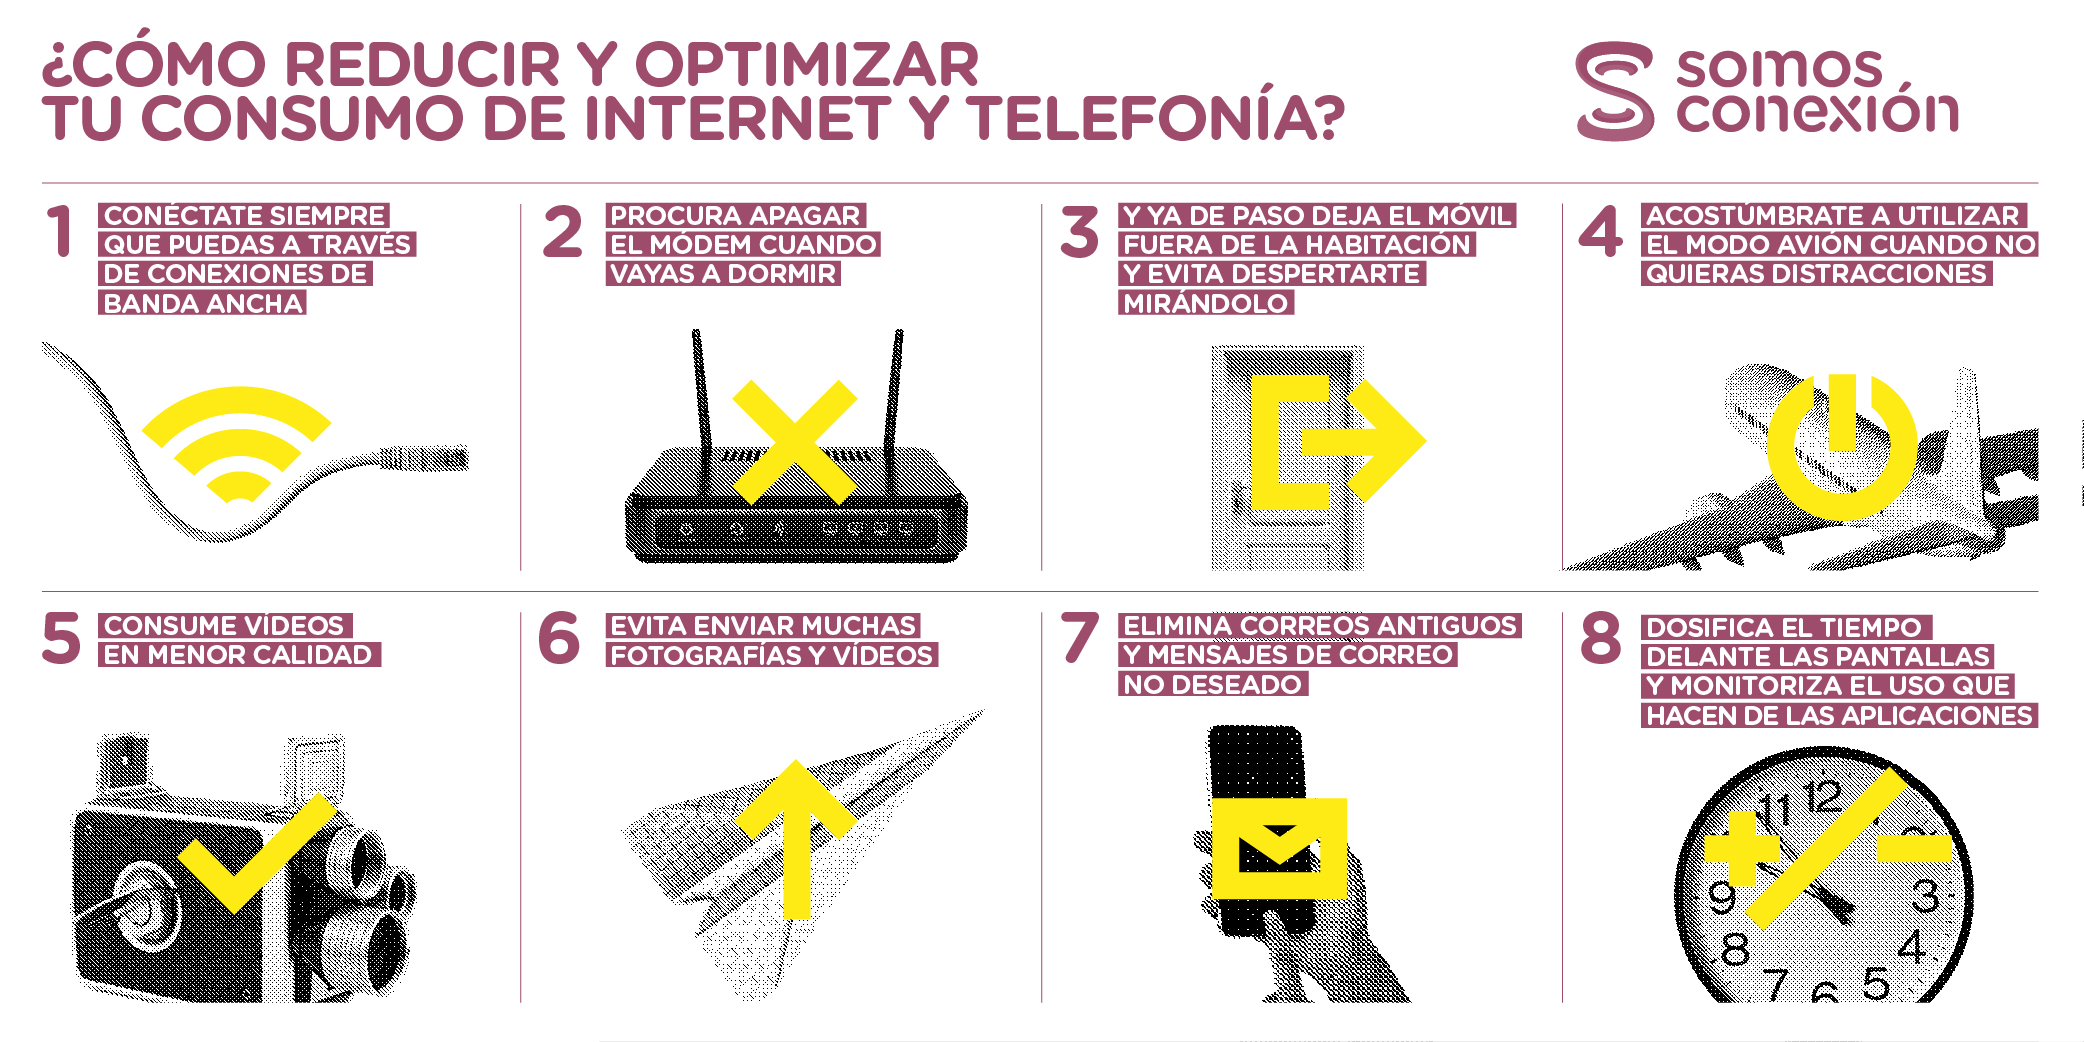 8 Tips Para Un Consumo Responsable De Internet Y Telefonía Somos Conexión 4169